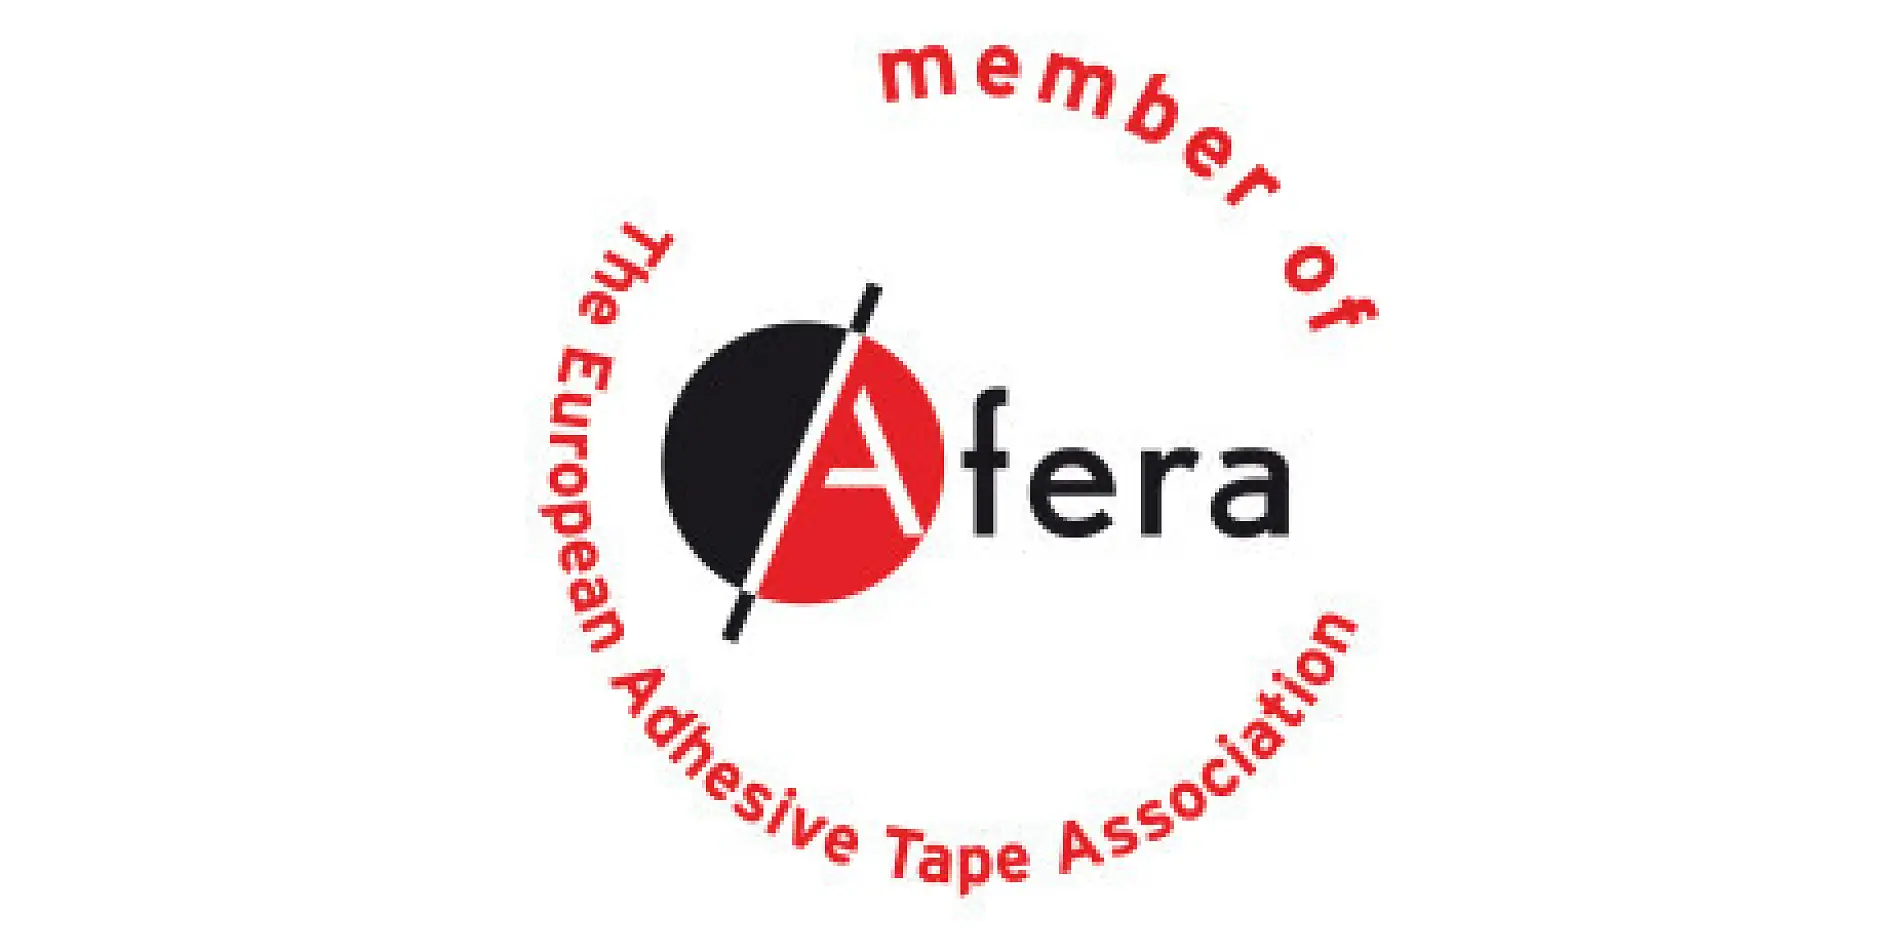 德莎是 afera（欧洲自粘胶带协会）的会员。 其会员包括制造商、原材料和机器供应商、转换器（如打印机、切割机、模切机和自粘胶带层压机）和国家胶带组织。